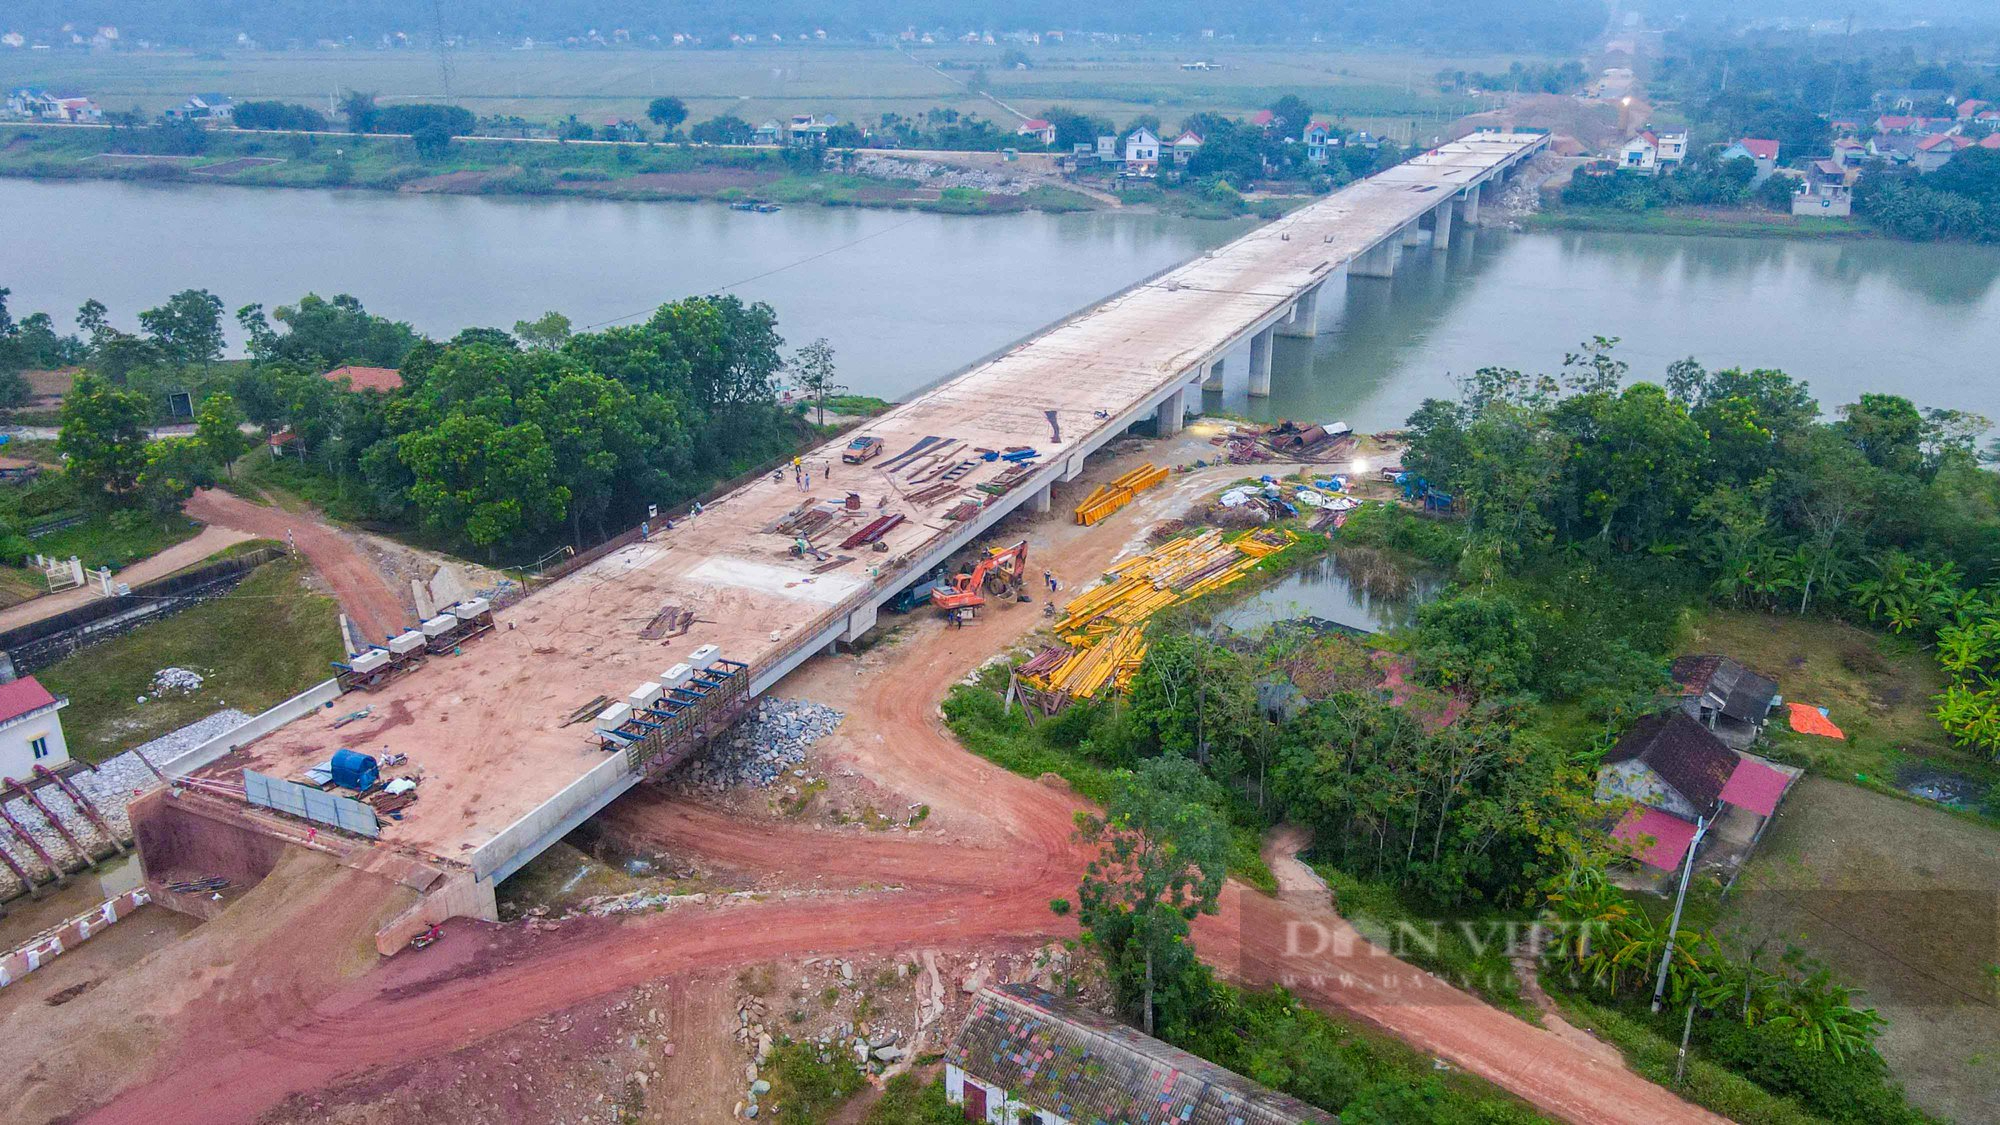 Hình hài cây cầu trăm tỷ vượt sông Mê Việt Linh trên tuyến cao tốc Bắc - Nam chuẩn bị về đích - Ảnh 1.